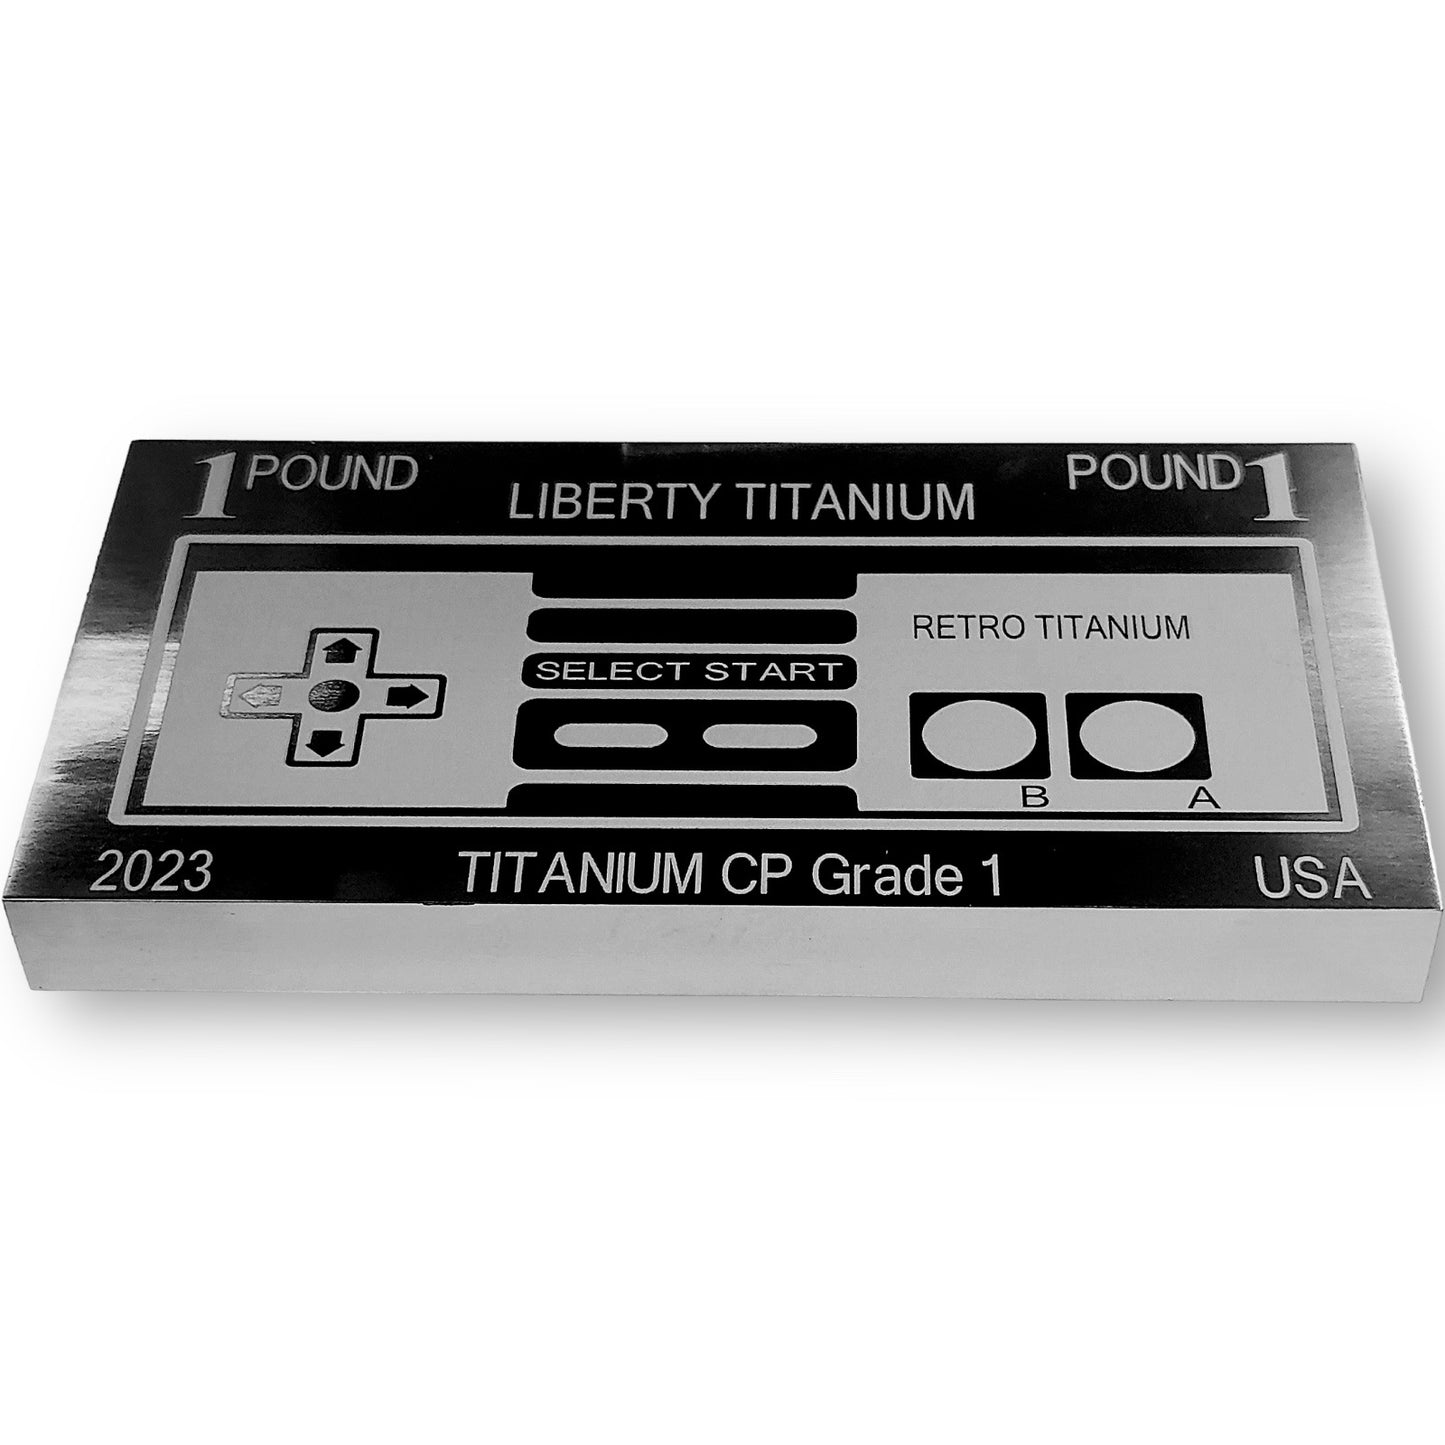 Retro-Series Titanium bars - Game controller